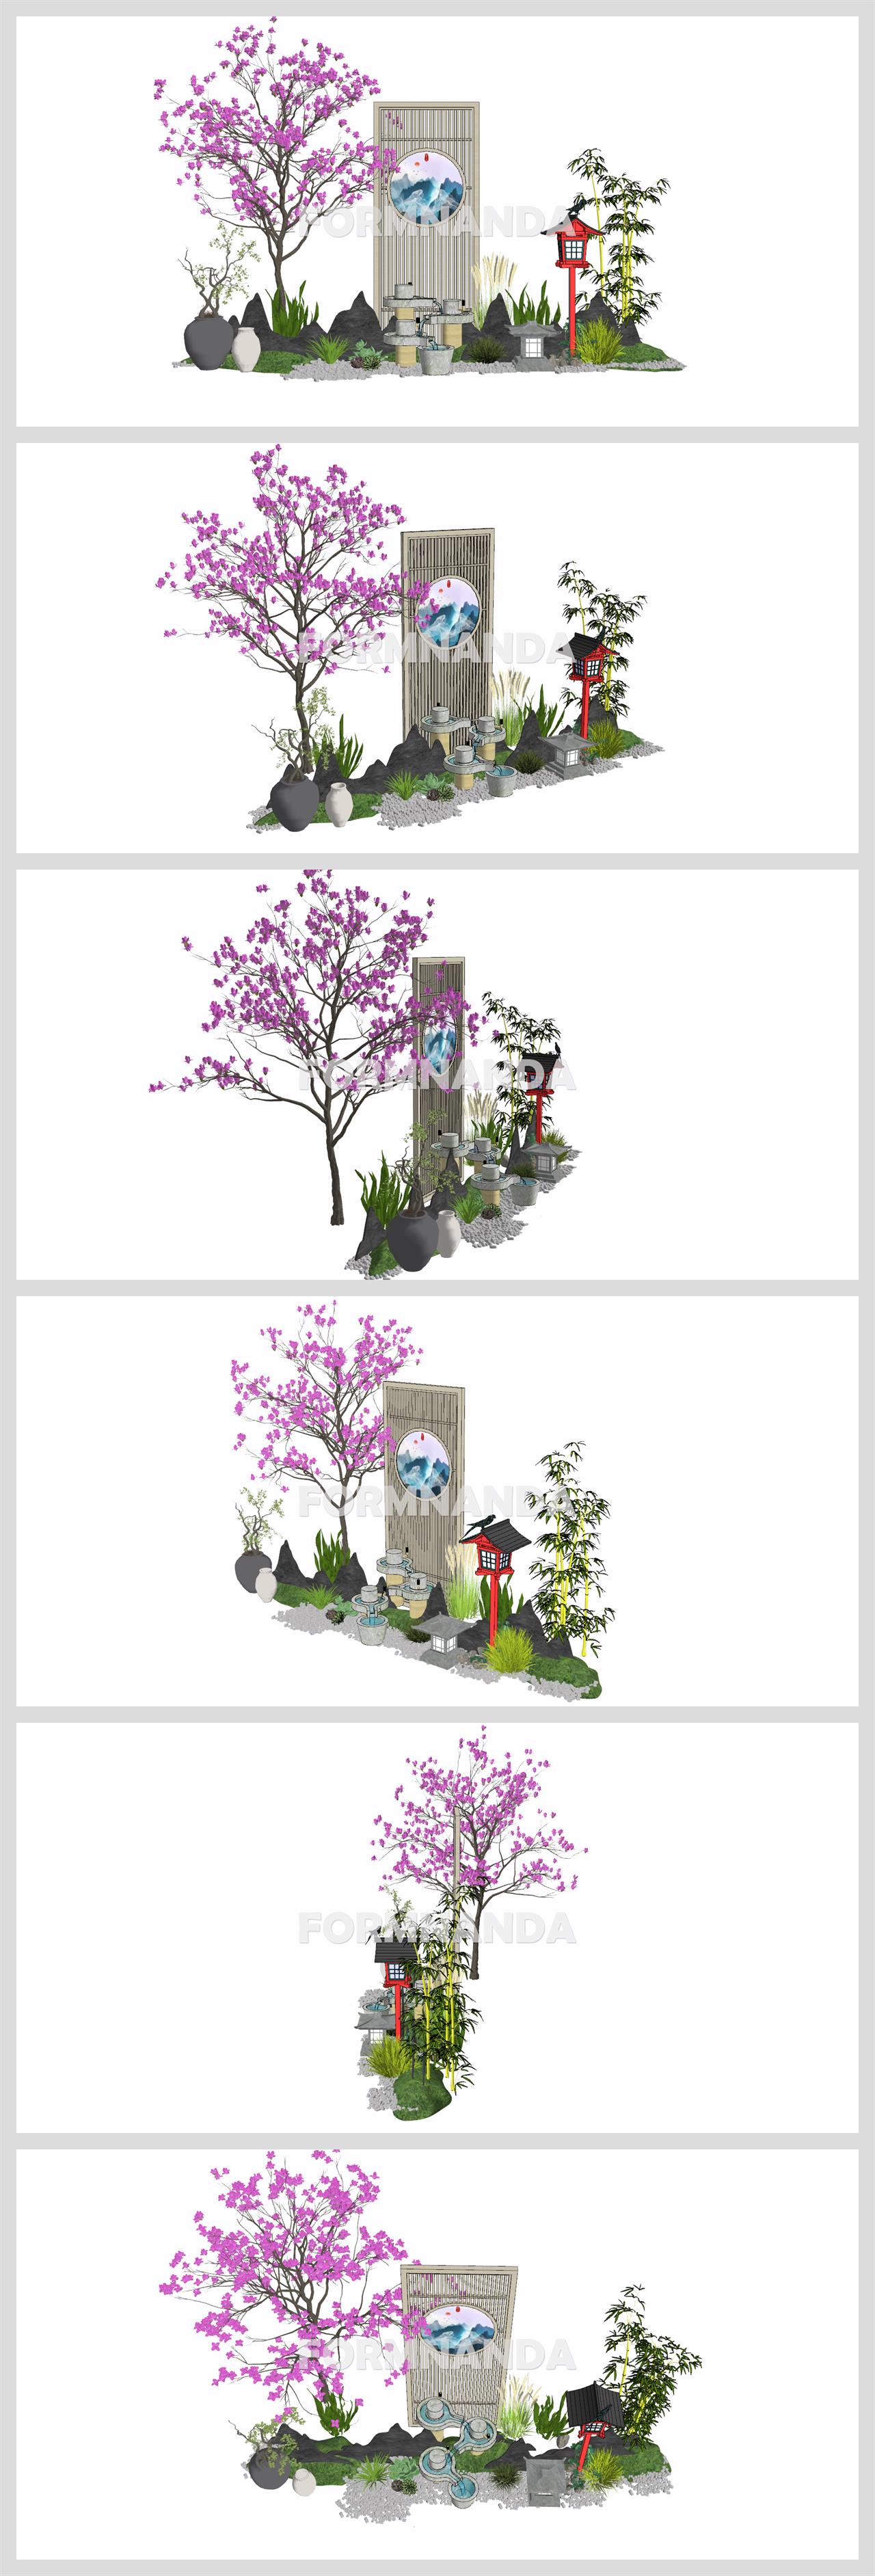 단조로운 정원조경 환경 Sketchup 모델 디자인 상세보기